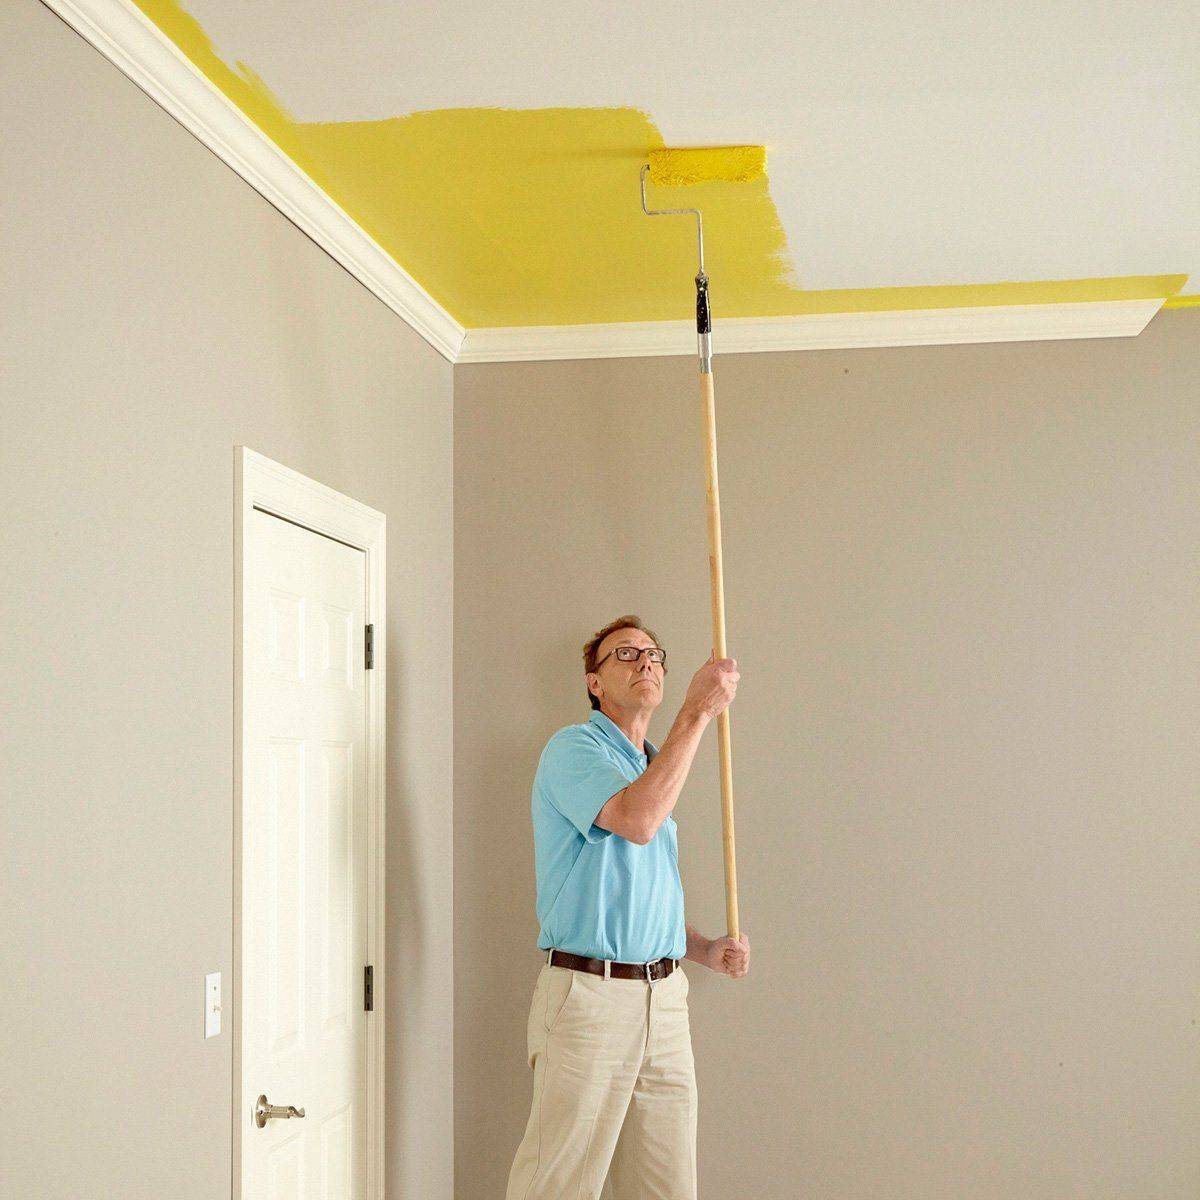 Цена покраски потолков за 1 м2. Окраска потолка. Побеленный потолок. Окраска потолка водоэмульсионной краской. Окрашенный потолок.